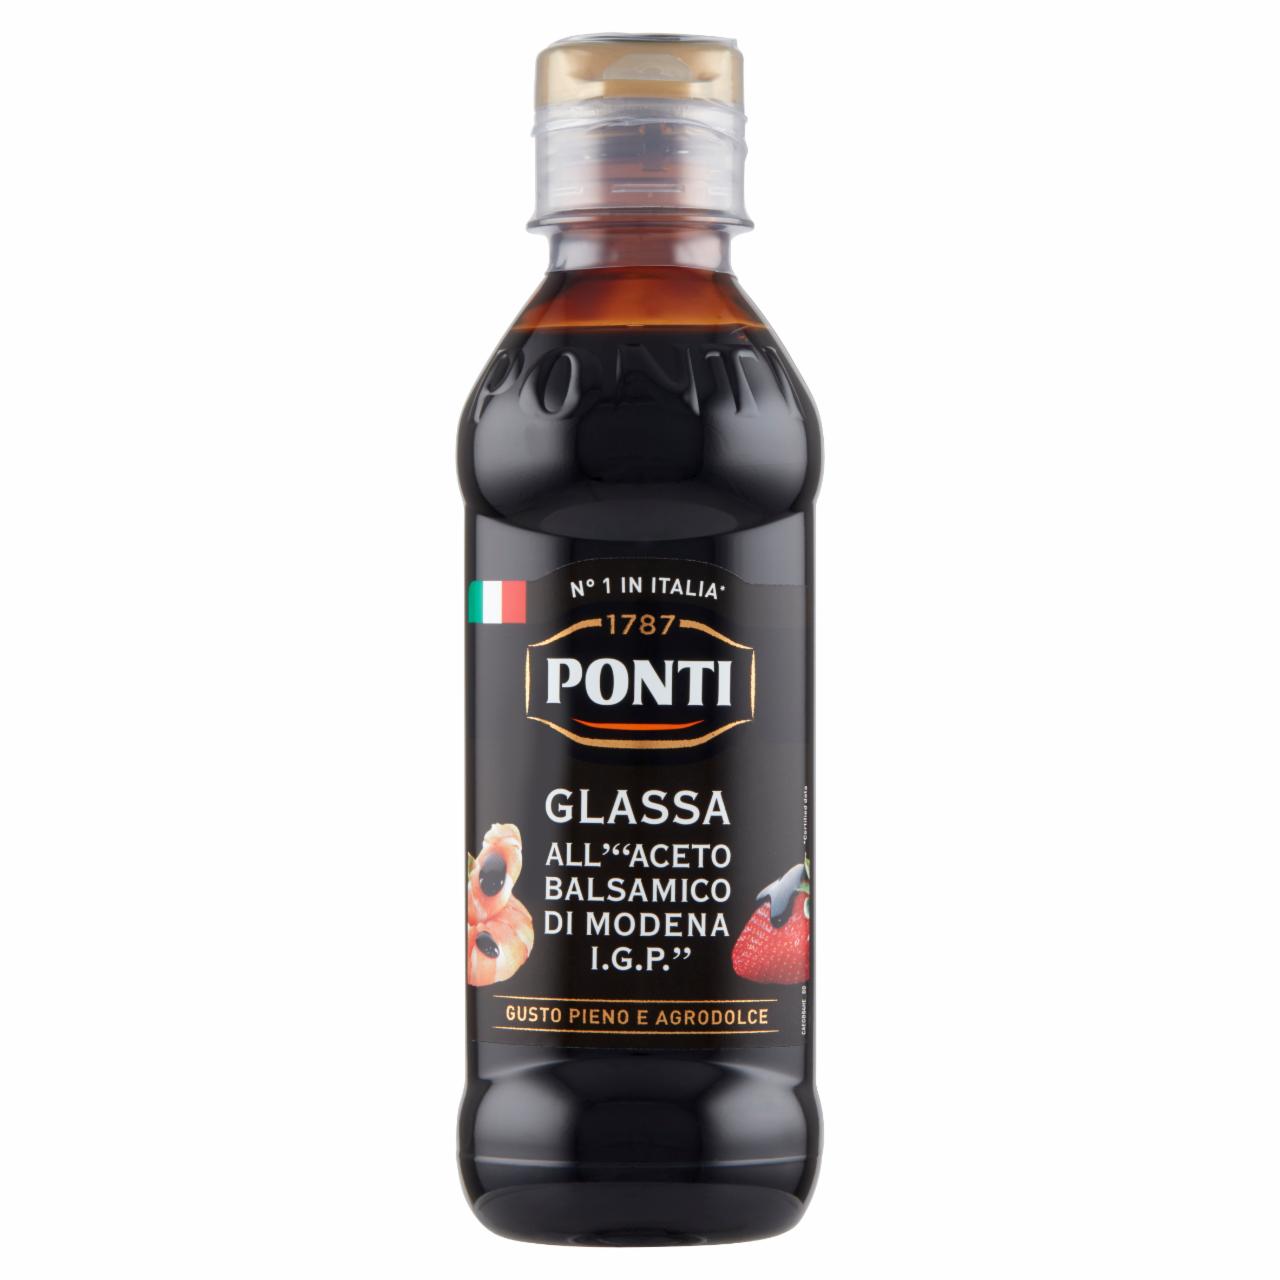 Zdjęcia - Ponti Glassa Krem na bazie octu balsamicznego z Modeny 250 g